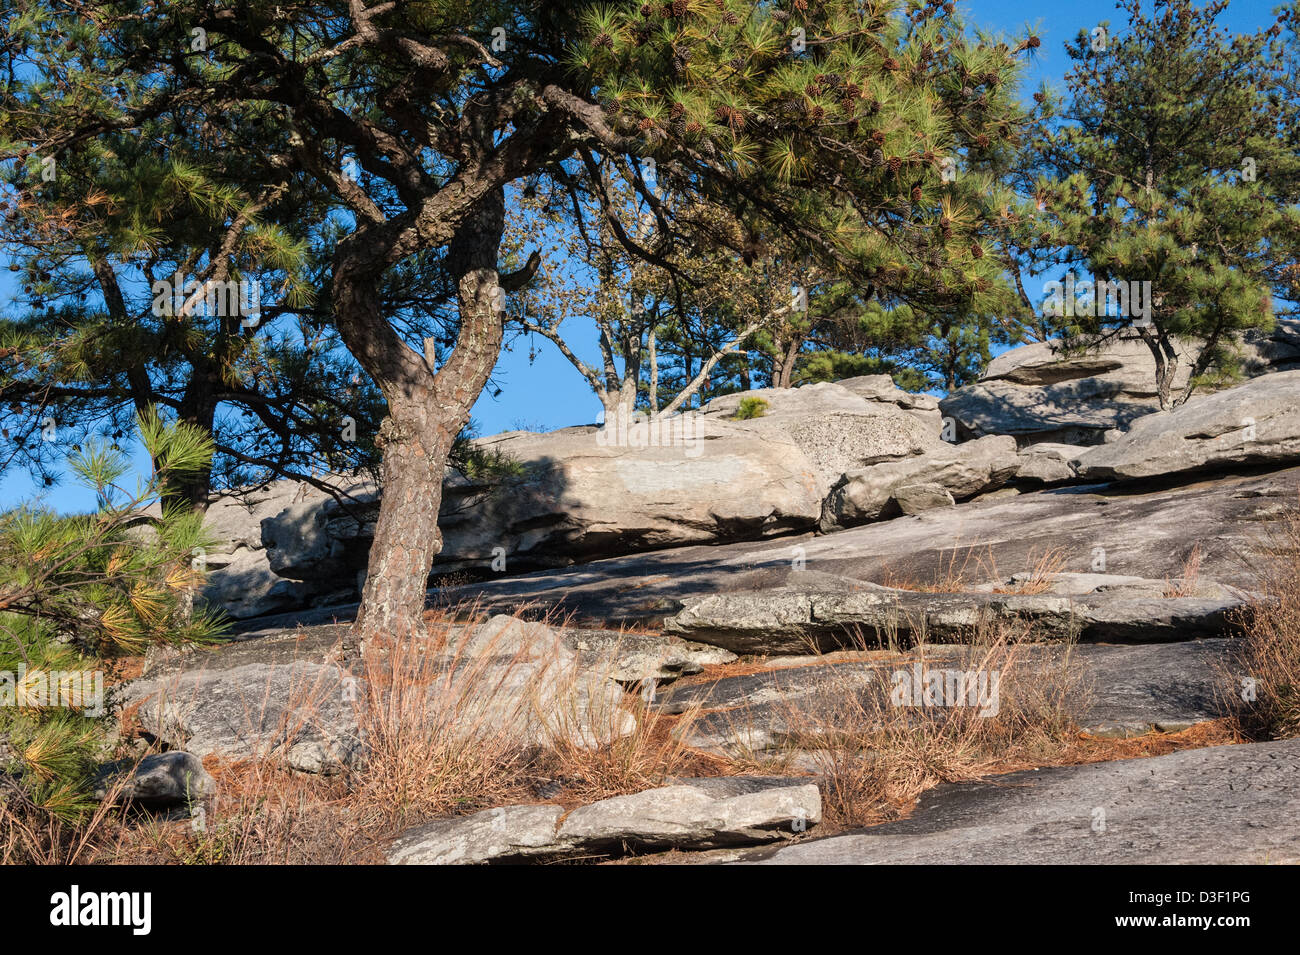 Soleggiato rocce e pini lungo il sentiero escursionistico in prossimità della cresta della montagna di pietra in Stone Mountain Park vicino ad Atlanta, Georgia, Stati Uniti d'America Foto Stock